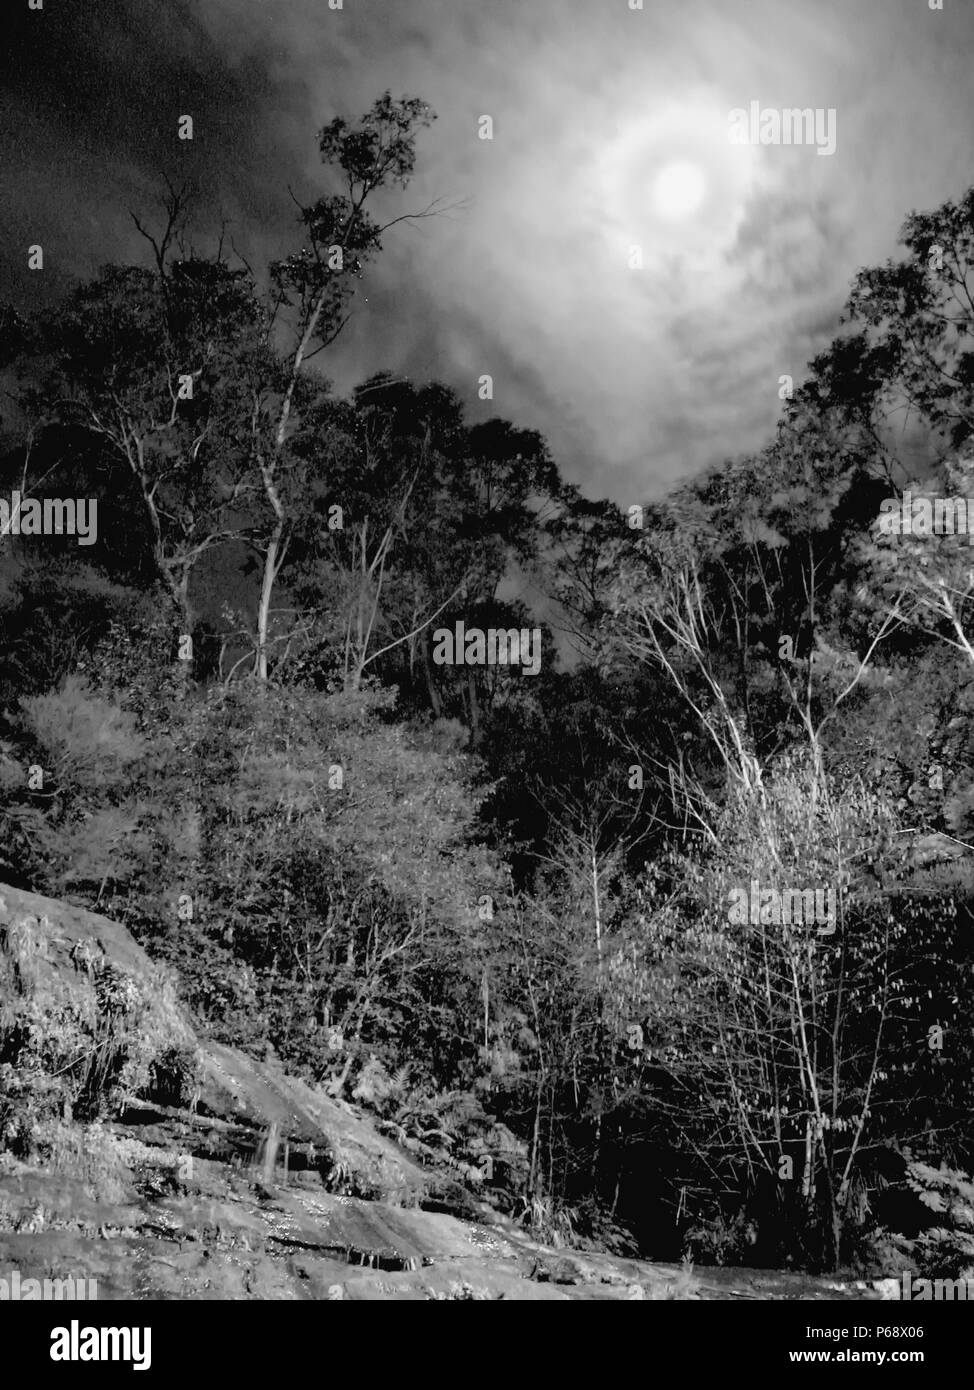 Cascade de Katoomba en pleine lune, Blue Mountains, NSW, Australie. Vision fantomatique de la lune enveloppée de nuages minces sur une scène de forêt. Version noir et blanc. Banque D'Images